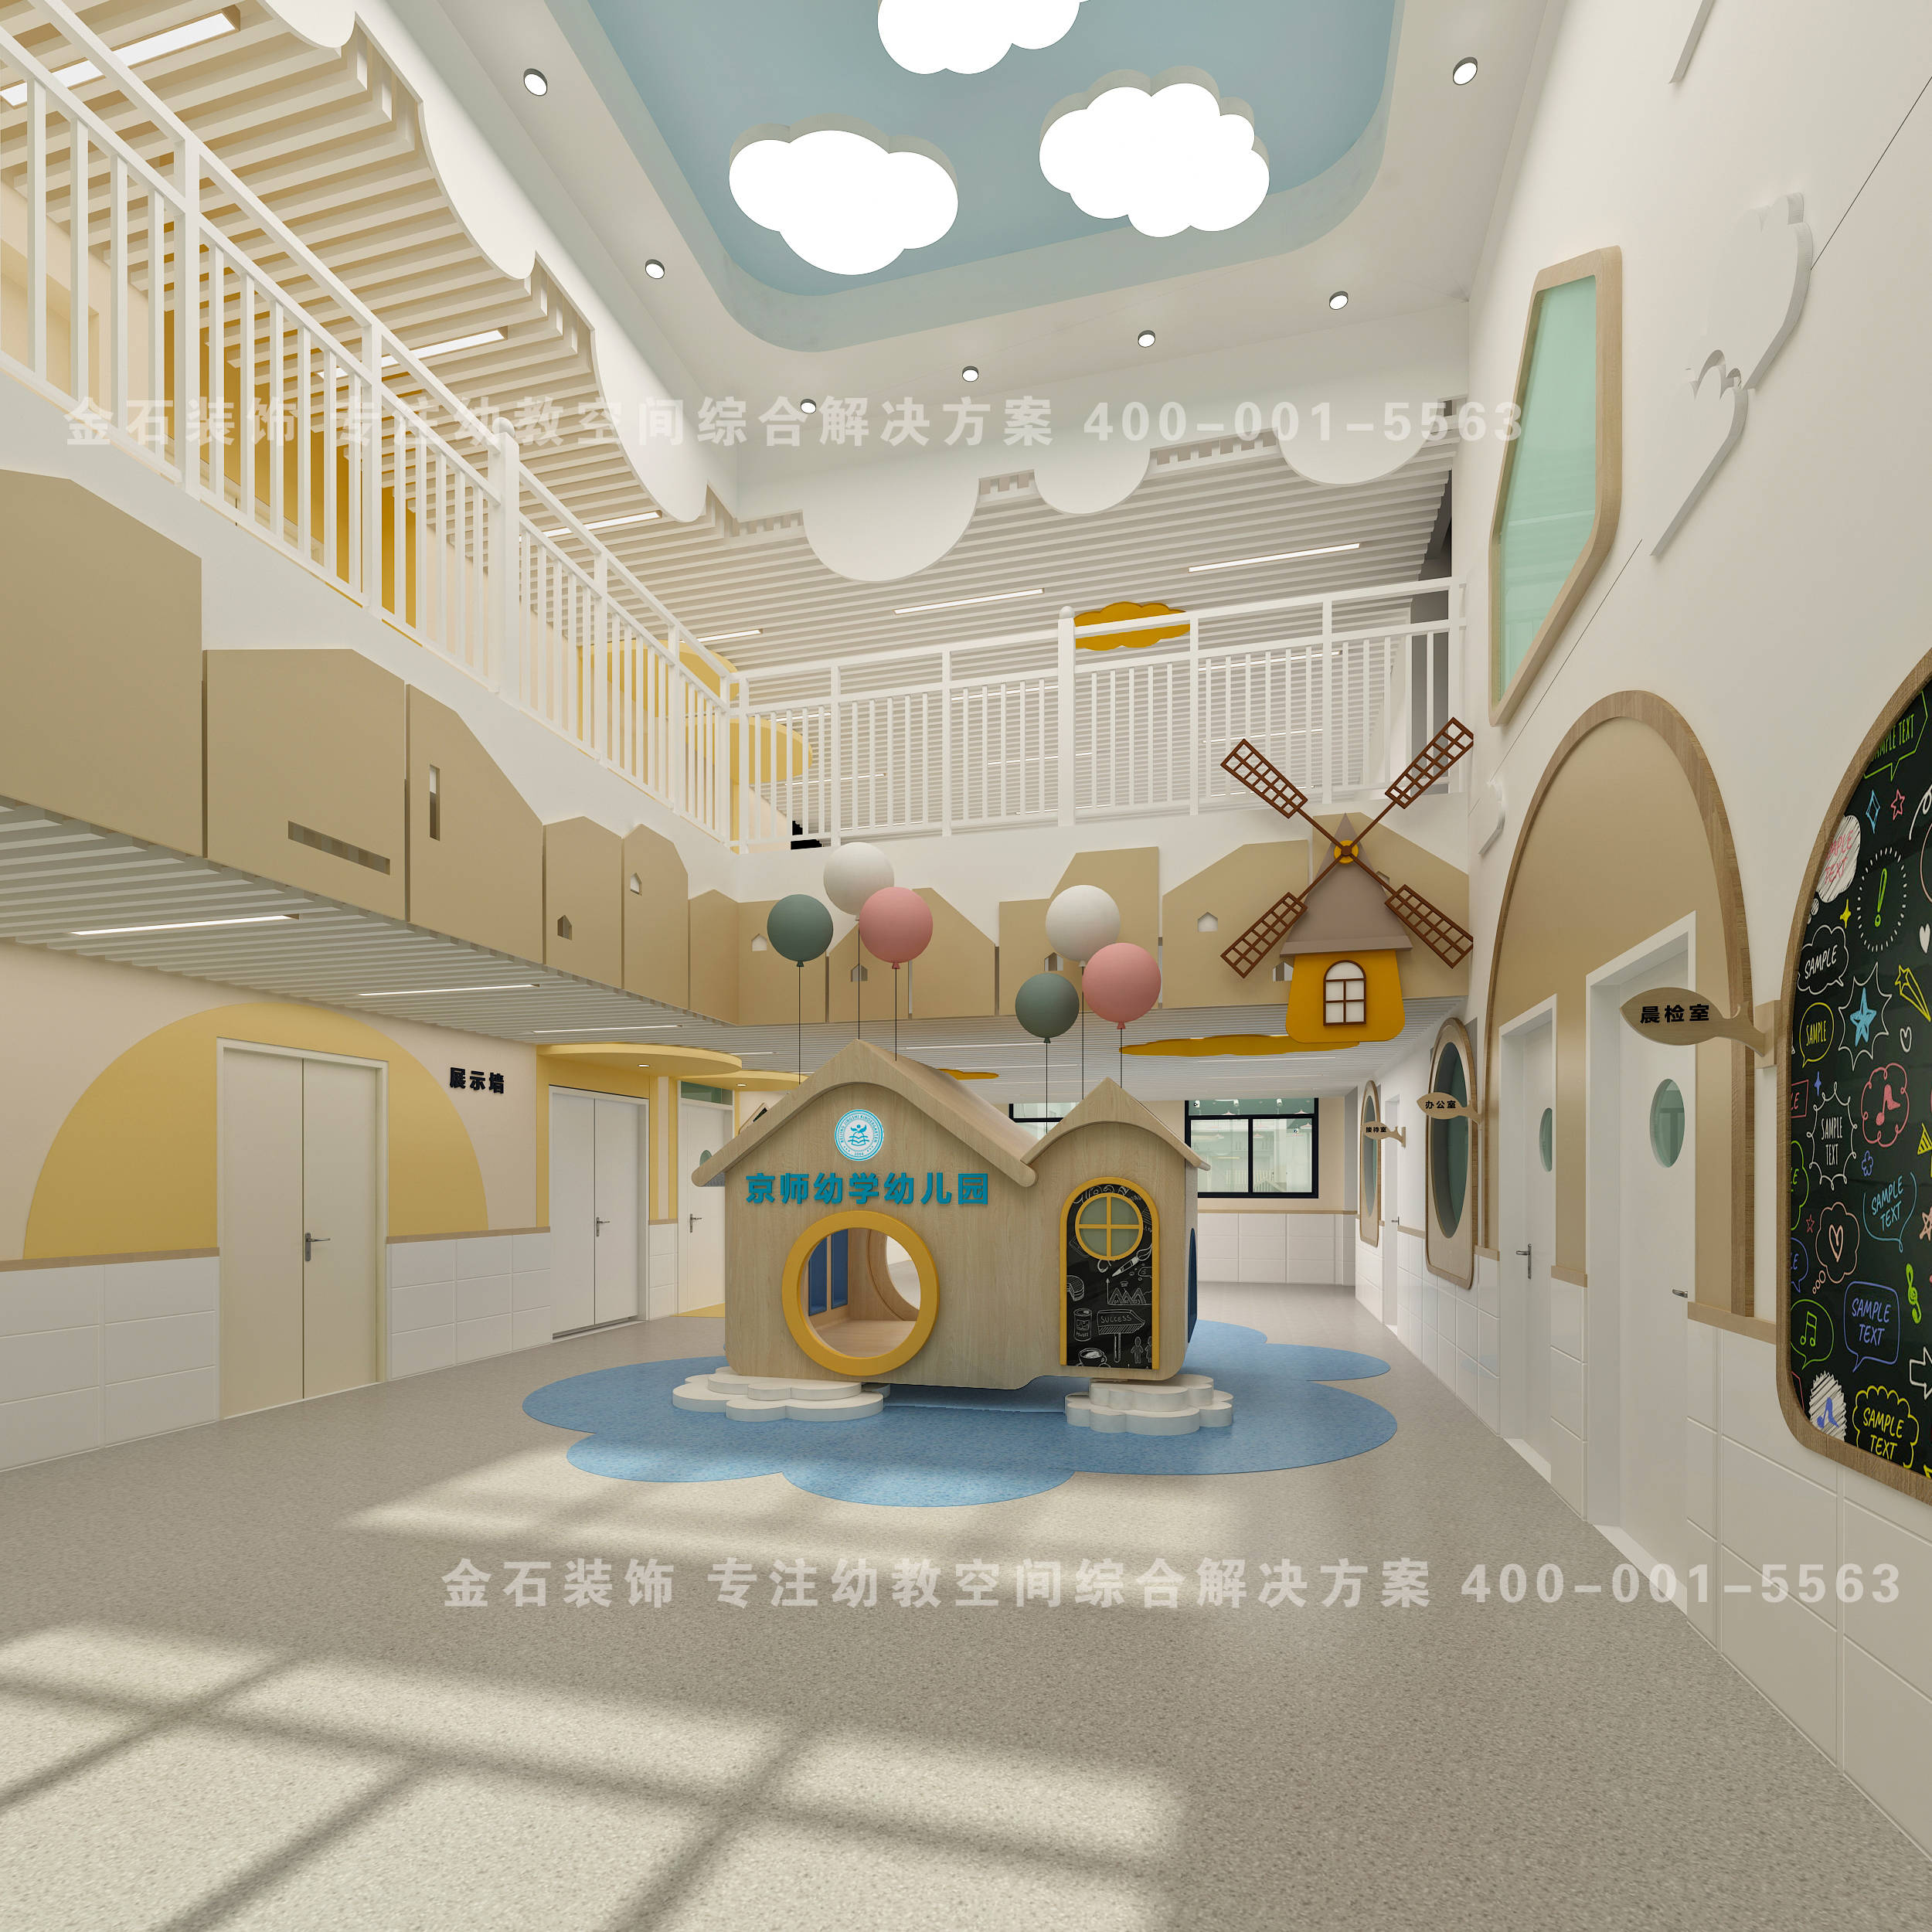 原来幼儿园大厅设计还可以这样设计!